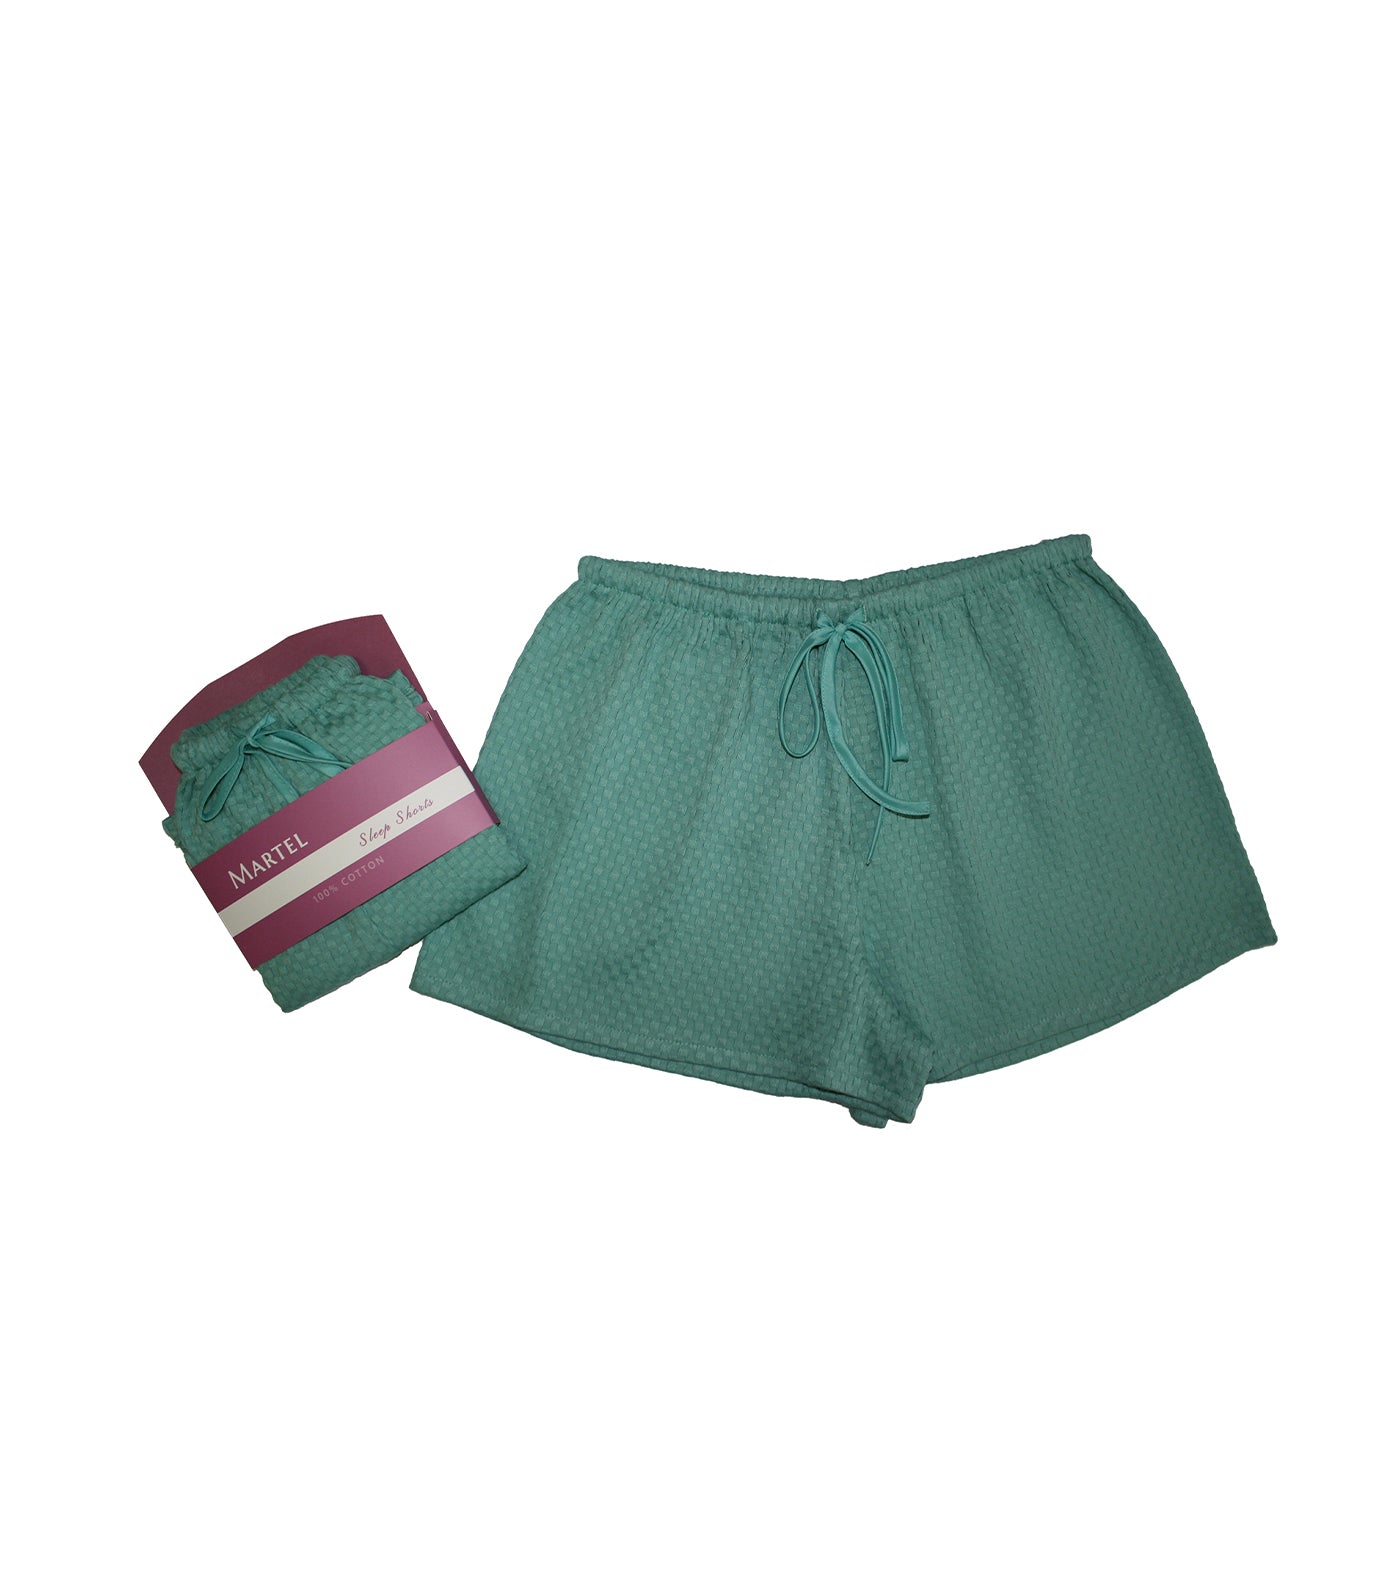 Honeycomb Sleep Shorts - Green